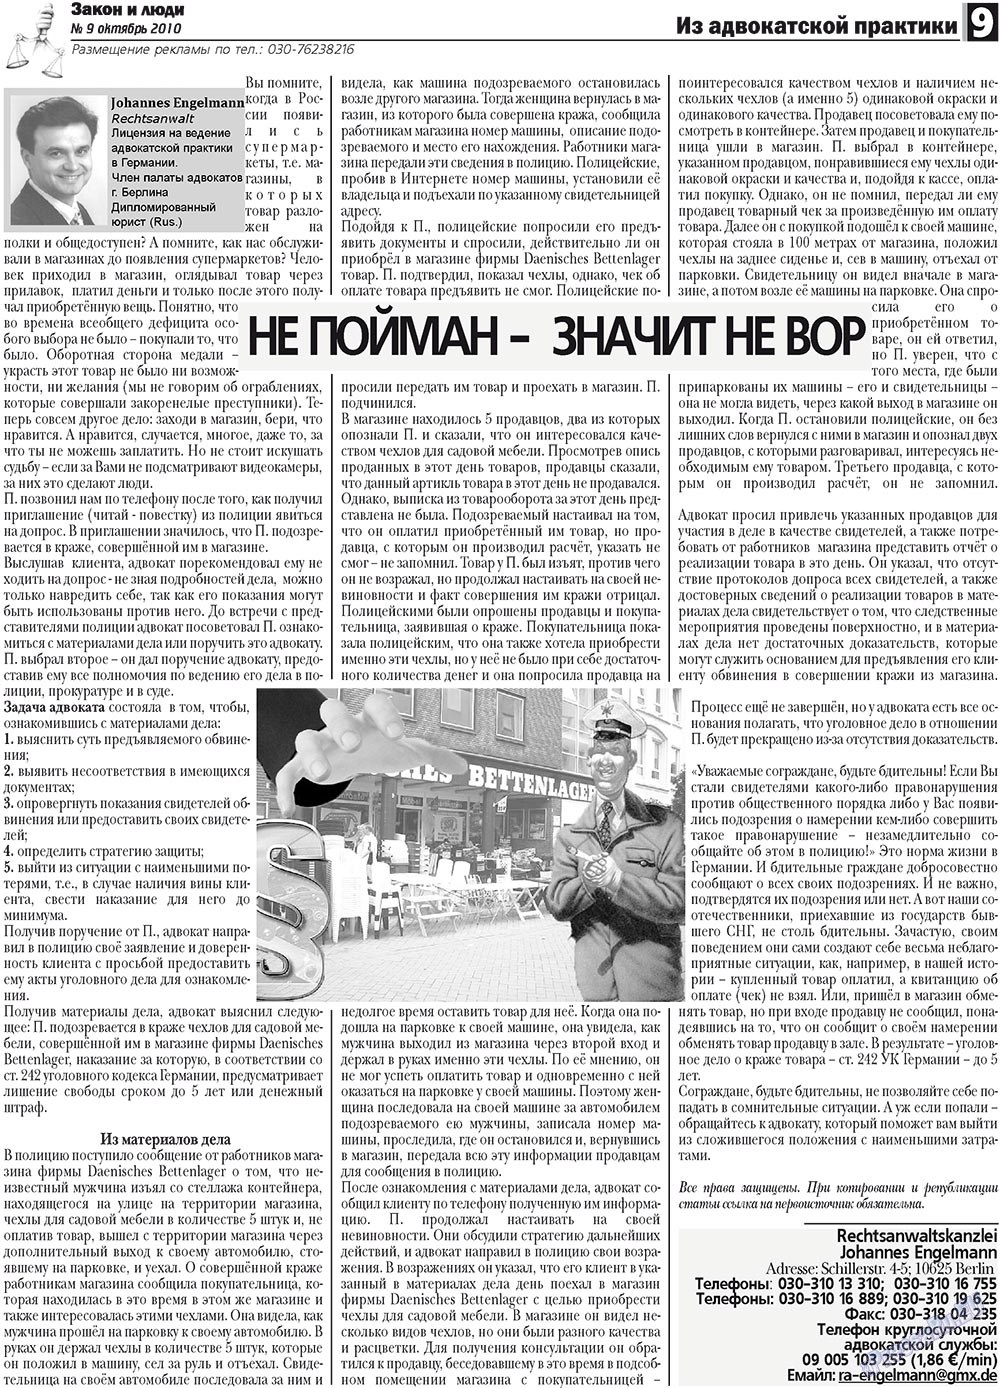 Закон и люди, газета. 2010 №9 стр.9